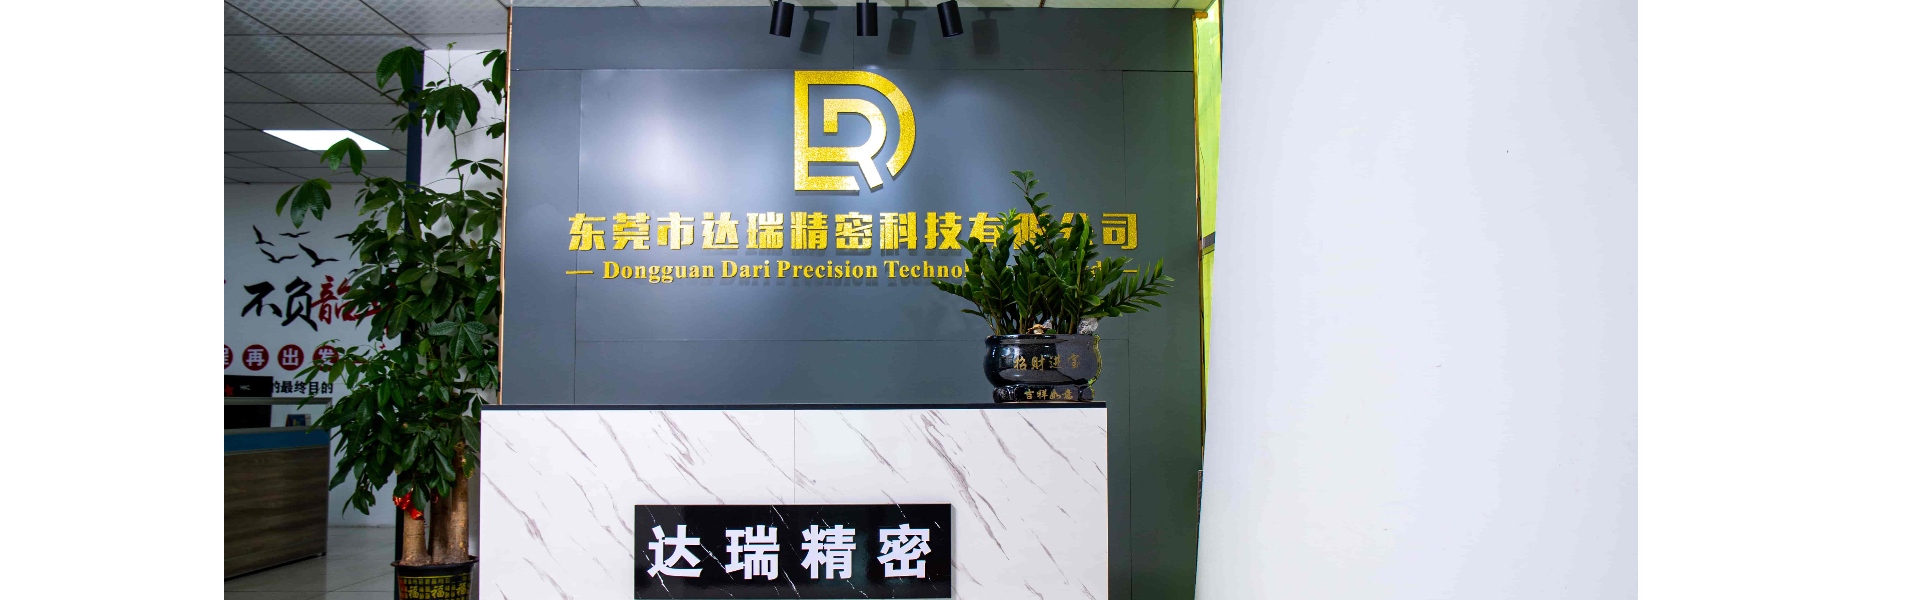 플라스틱 금형, 사출 성형, 플라스틱 셸,Dongguan Darui Precision Technology Co., Ltd.